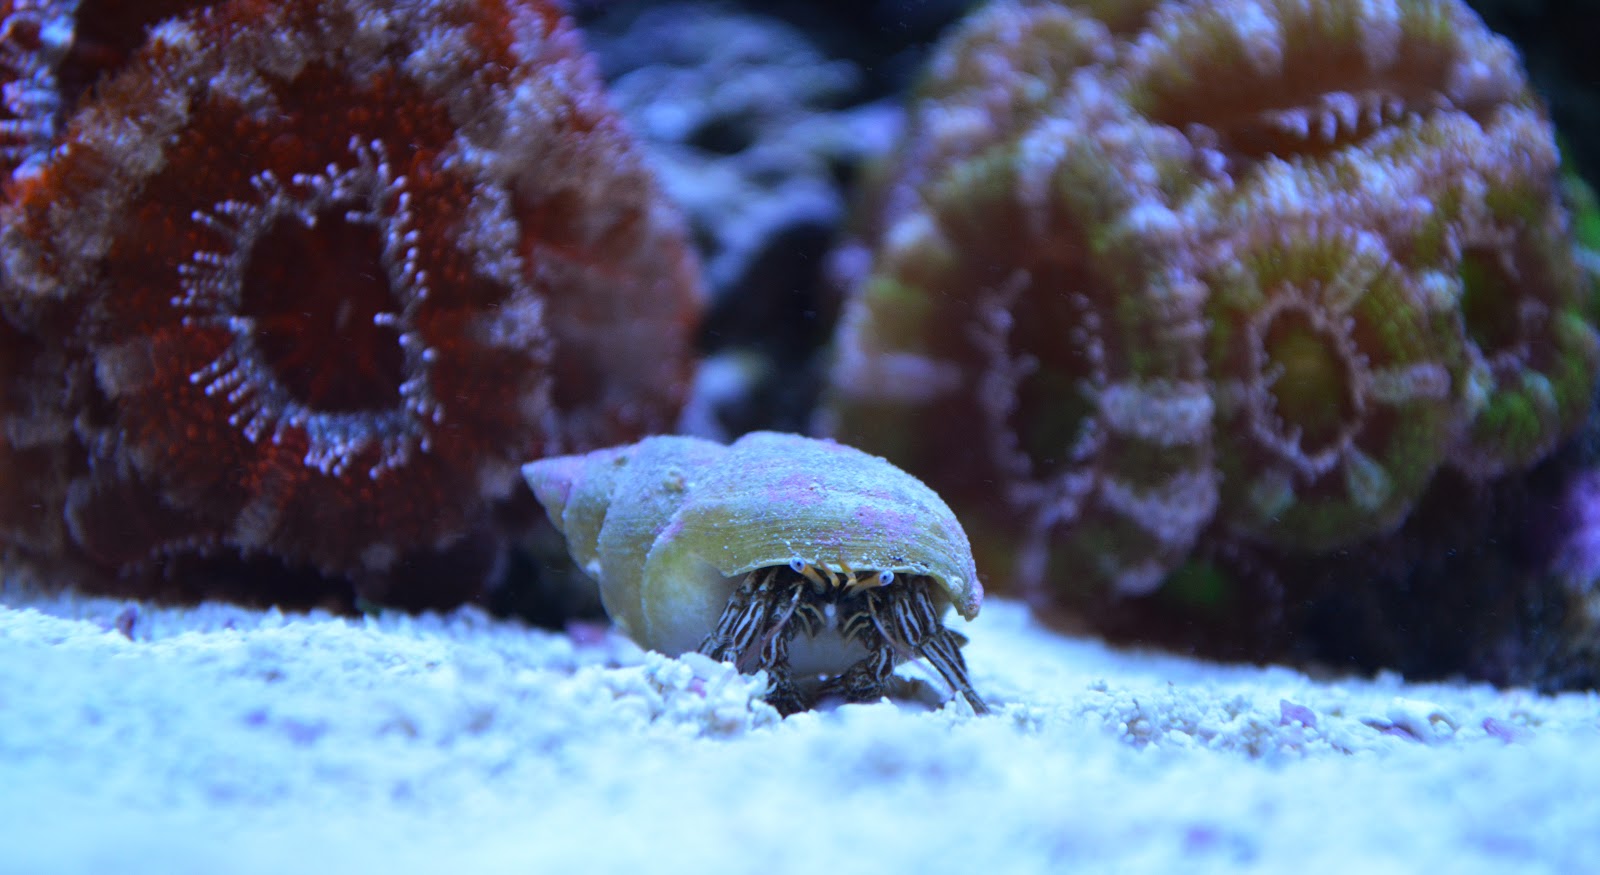 hermit crab image via reef2reef member Rickyrooz